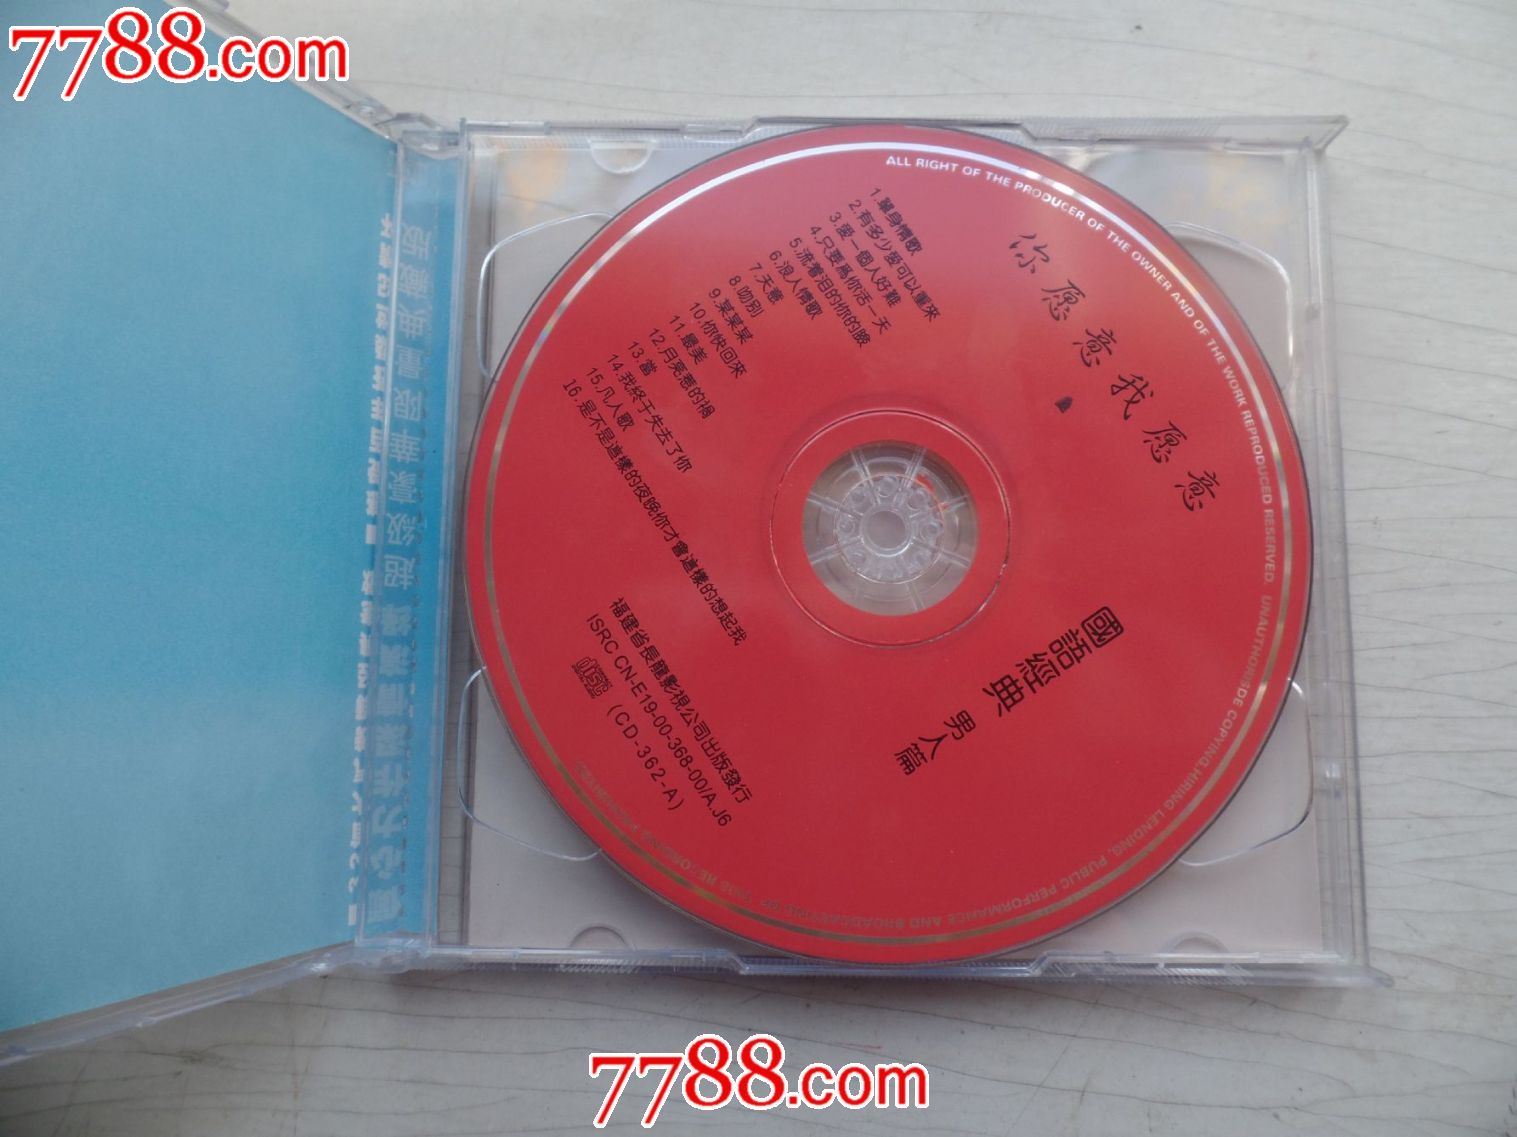 男人篇国语经典(2CD)-价格:10元-se34643142